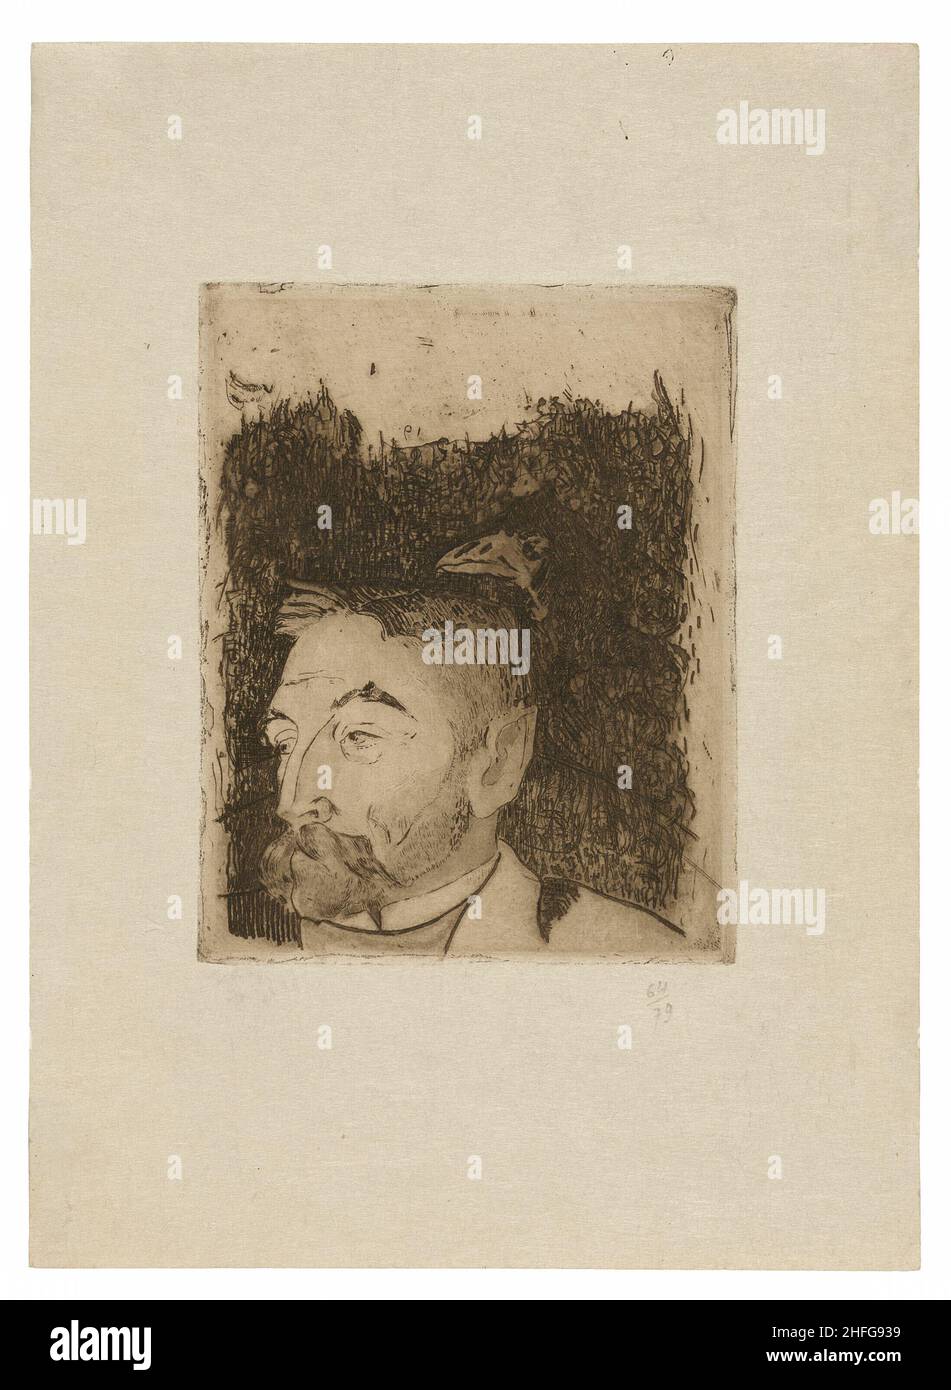 Retrato de St&#XE9;phane Mallarm&#XE9;, 1891, impreso en 1919. Foto de stock